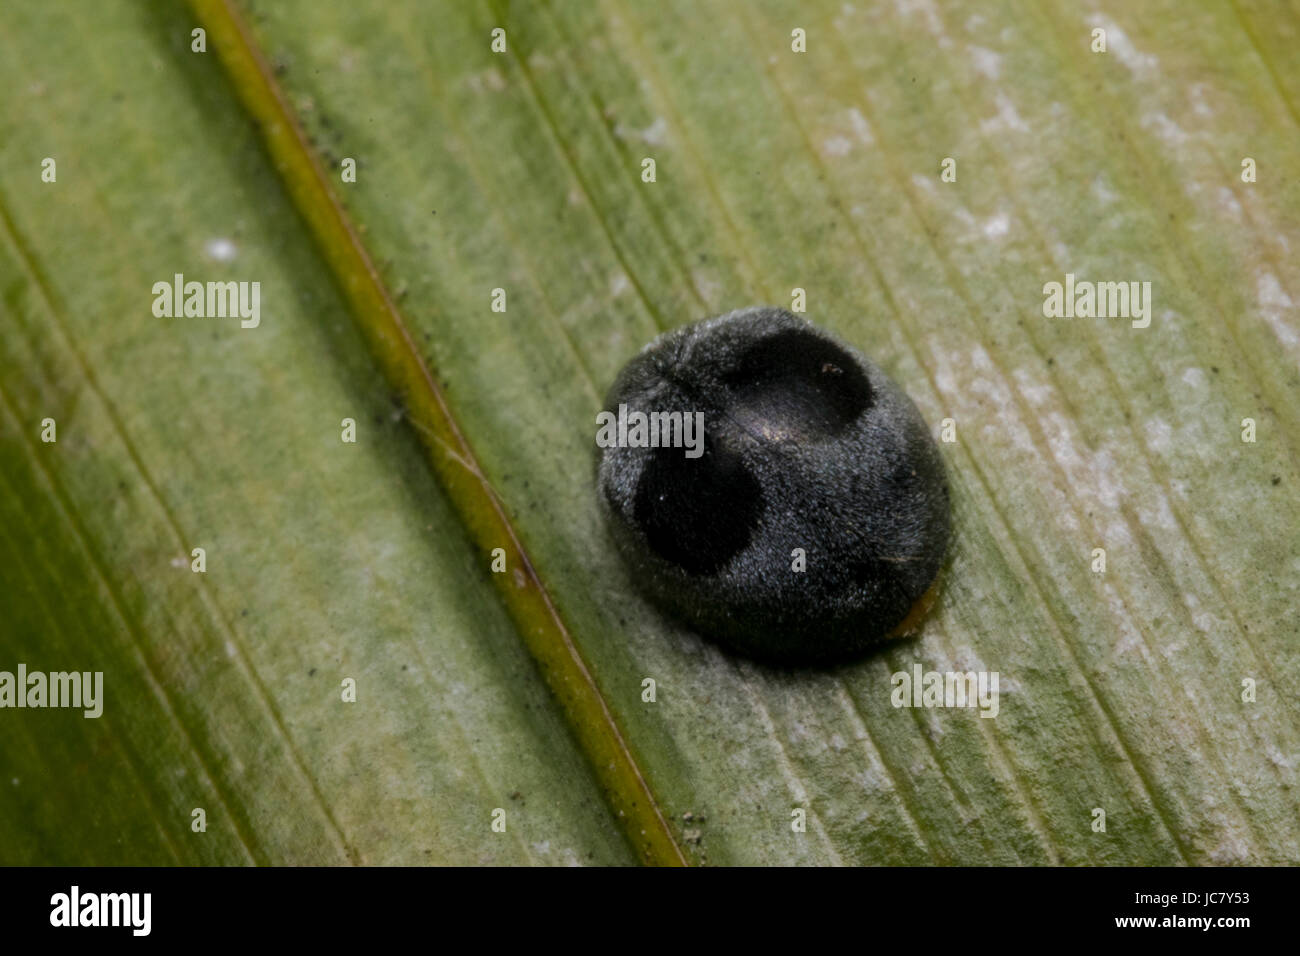 Coccinella nera immagini e fotografie stock ad alta risoluzione - Alamy